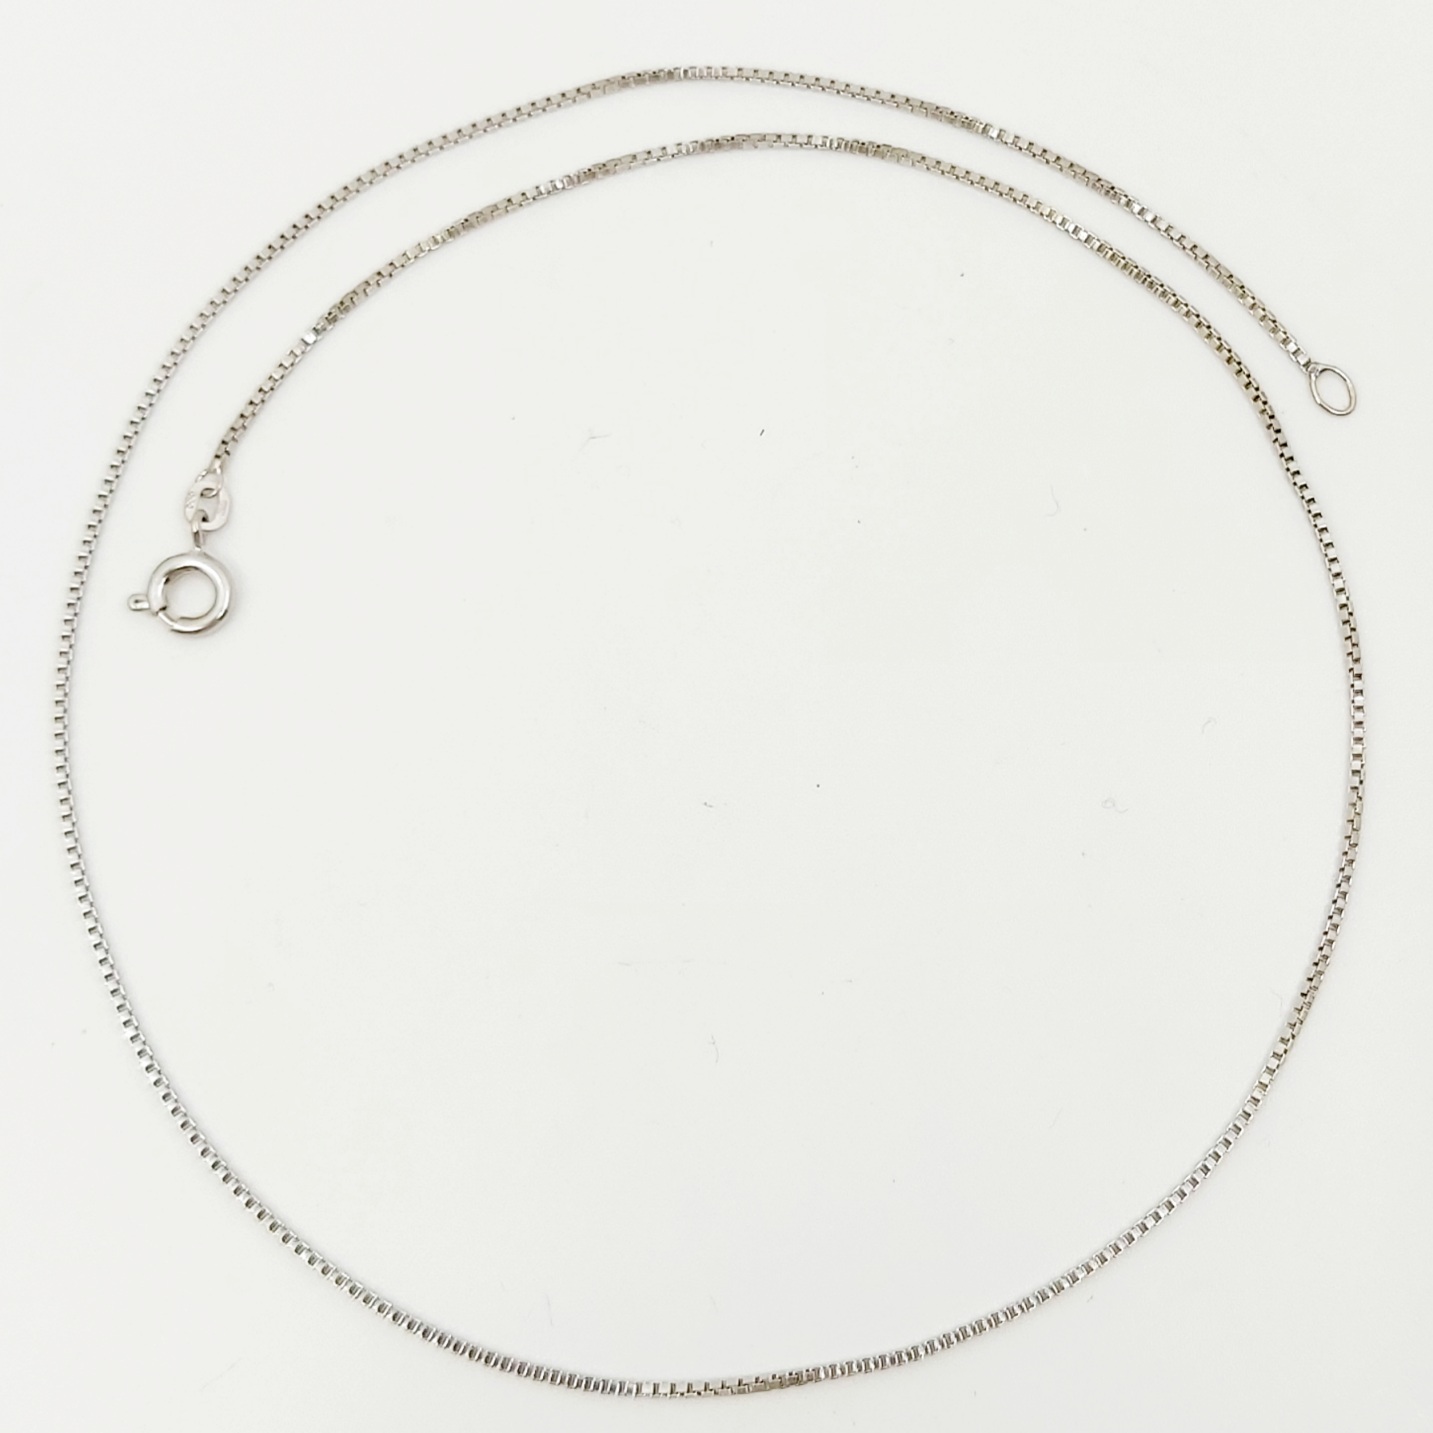 1 Halskette 585/- Weißgold, 39,5 cm, 1,6 g